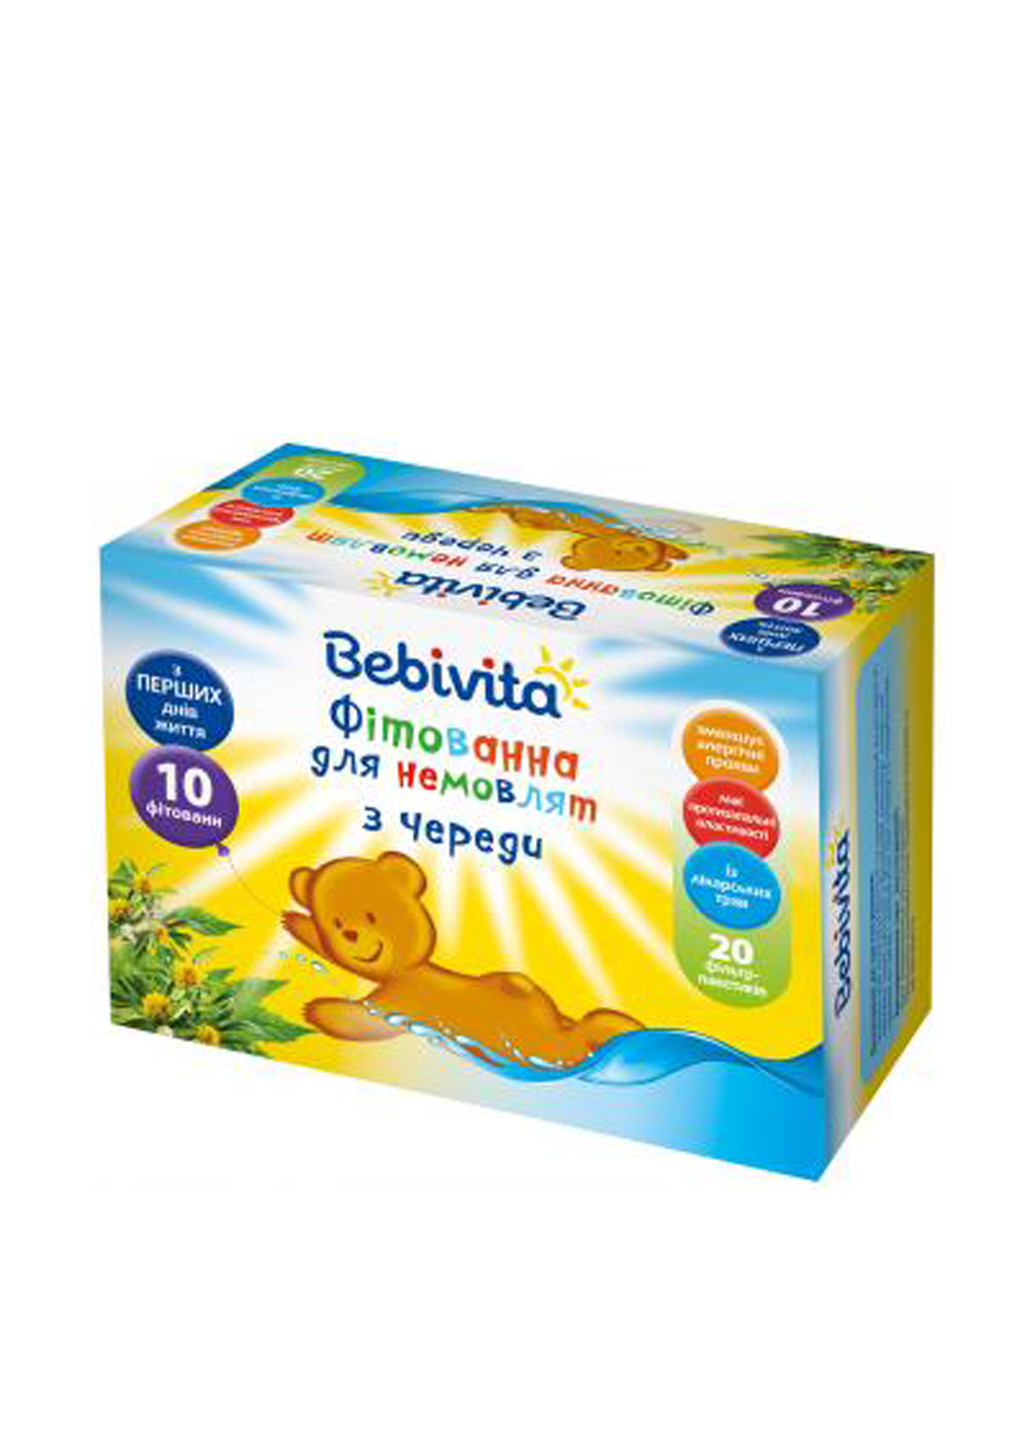 Фитованна для малышей из череды, 20х1,5 г Bebivita (138200708)